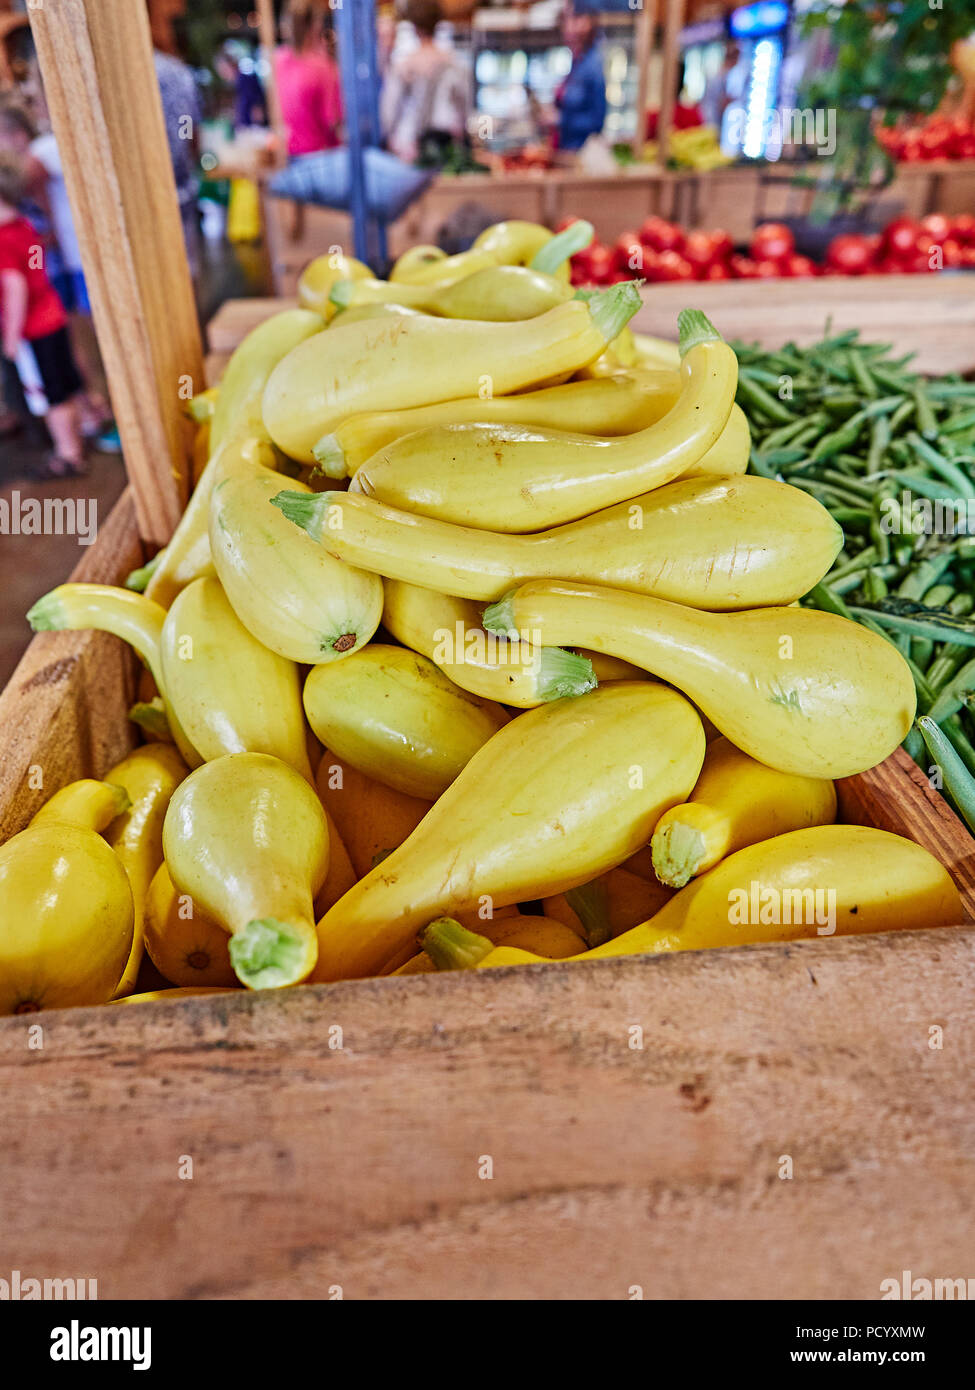 Courgettes jaunes, haricots verts et autres légumes frais sur l'affichage pour la vente dans une ferme en bordure ou marché de fermiers dans les régions rurales de l'Alabama aux États-Unis. Banque D'Images